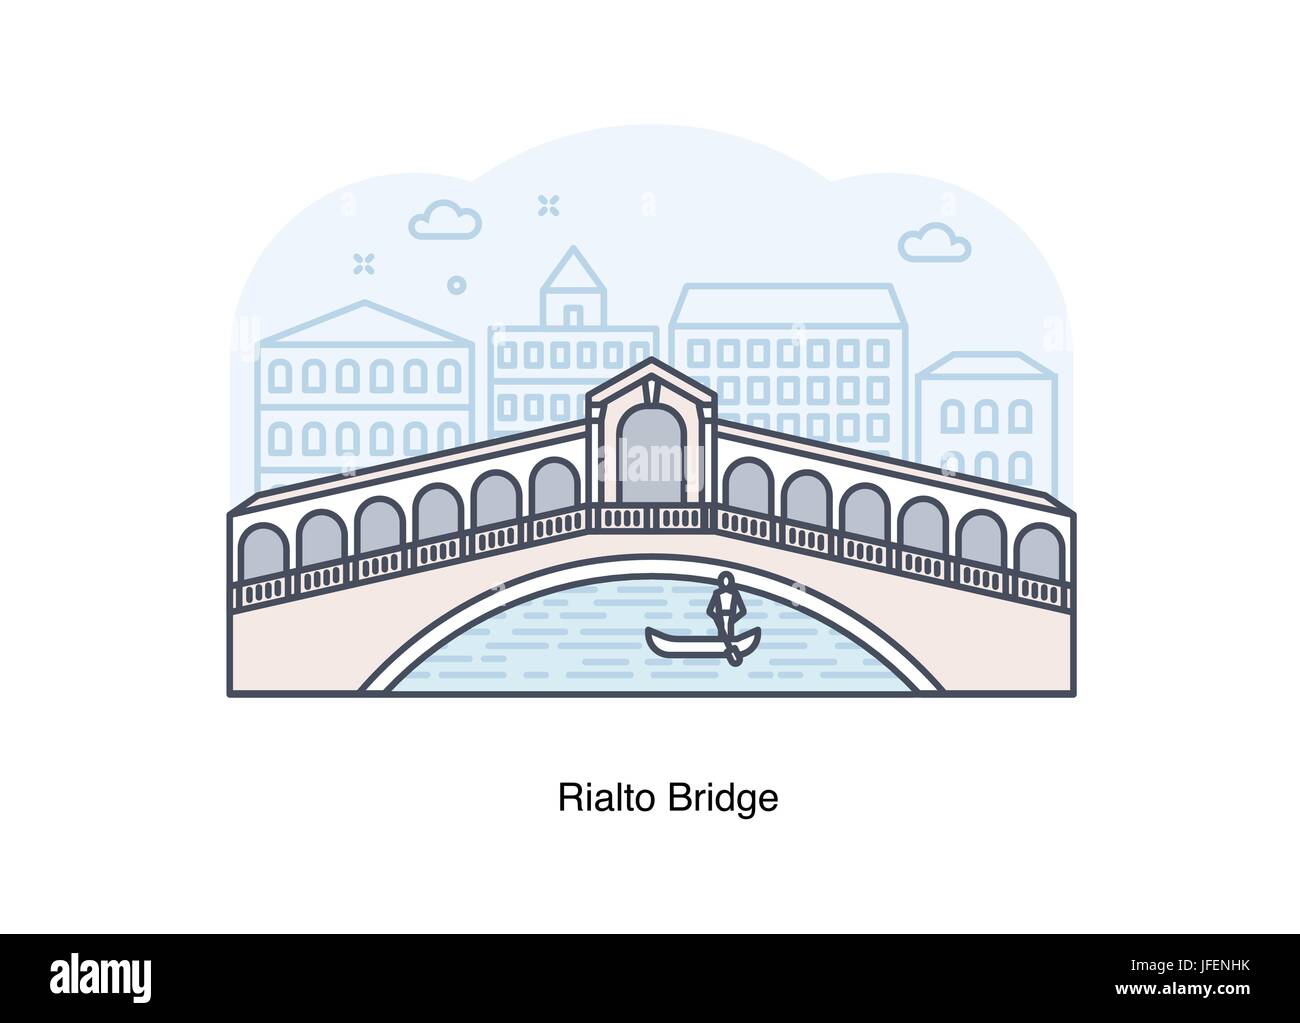 Vektorgrafik-Linie der Rialto-Brücke, Venedig, Italien. Stock Vektor